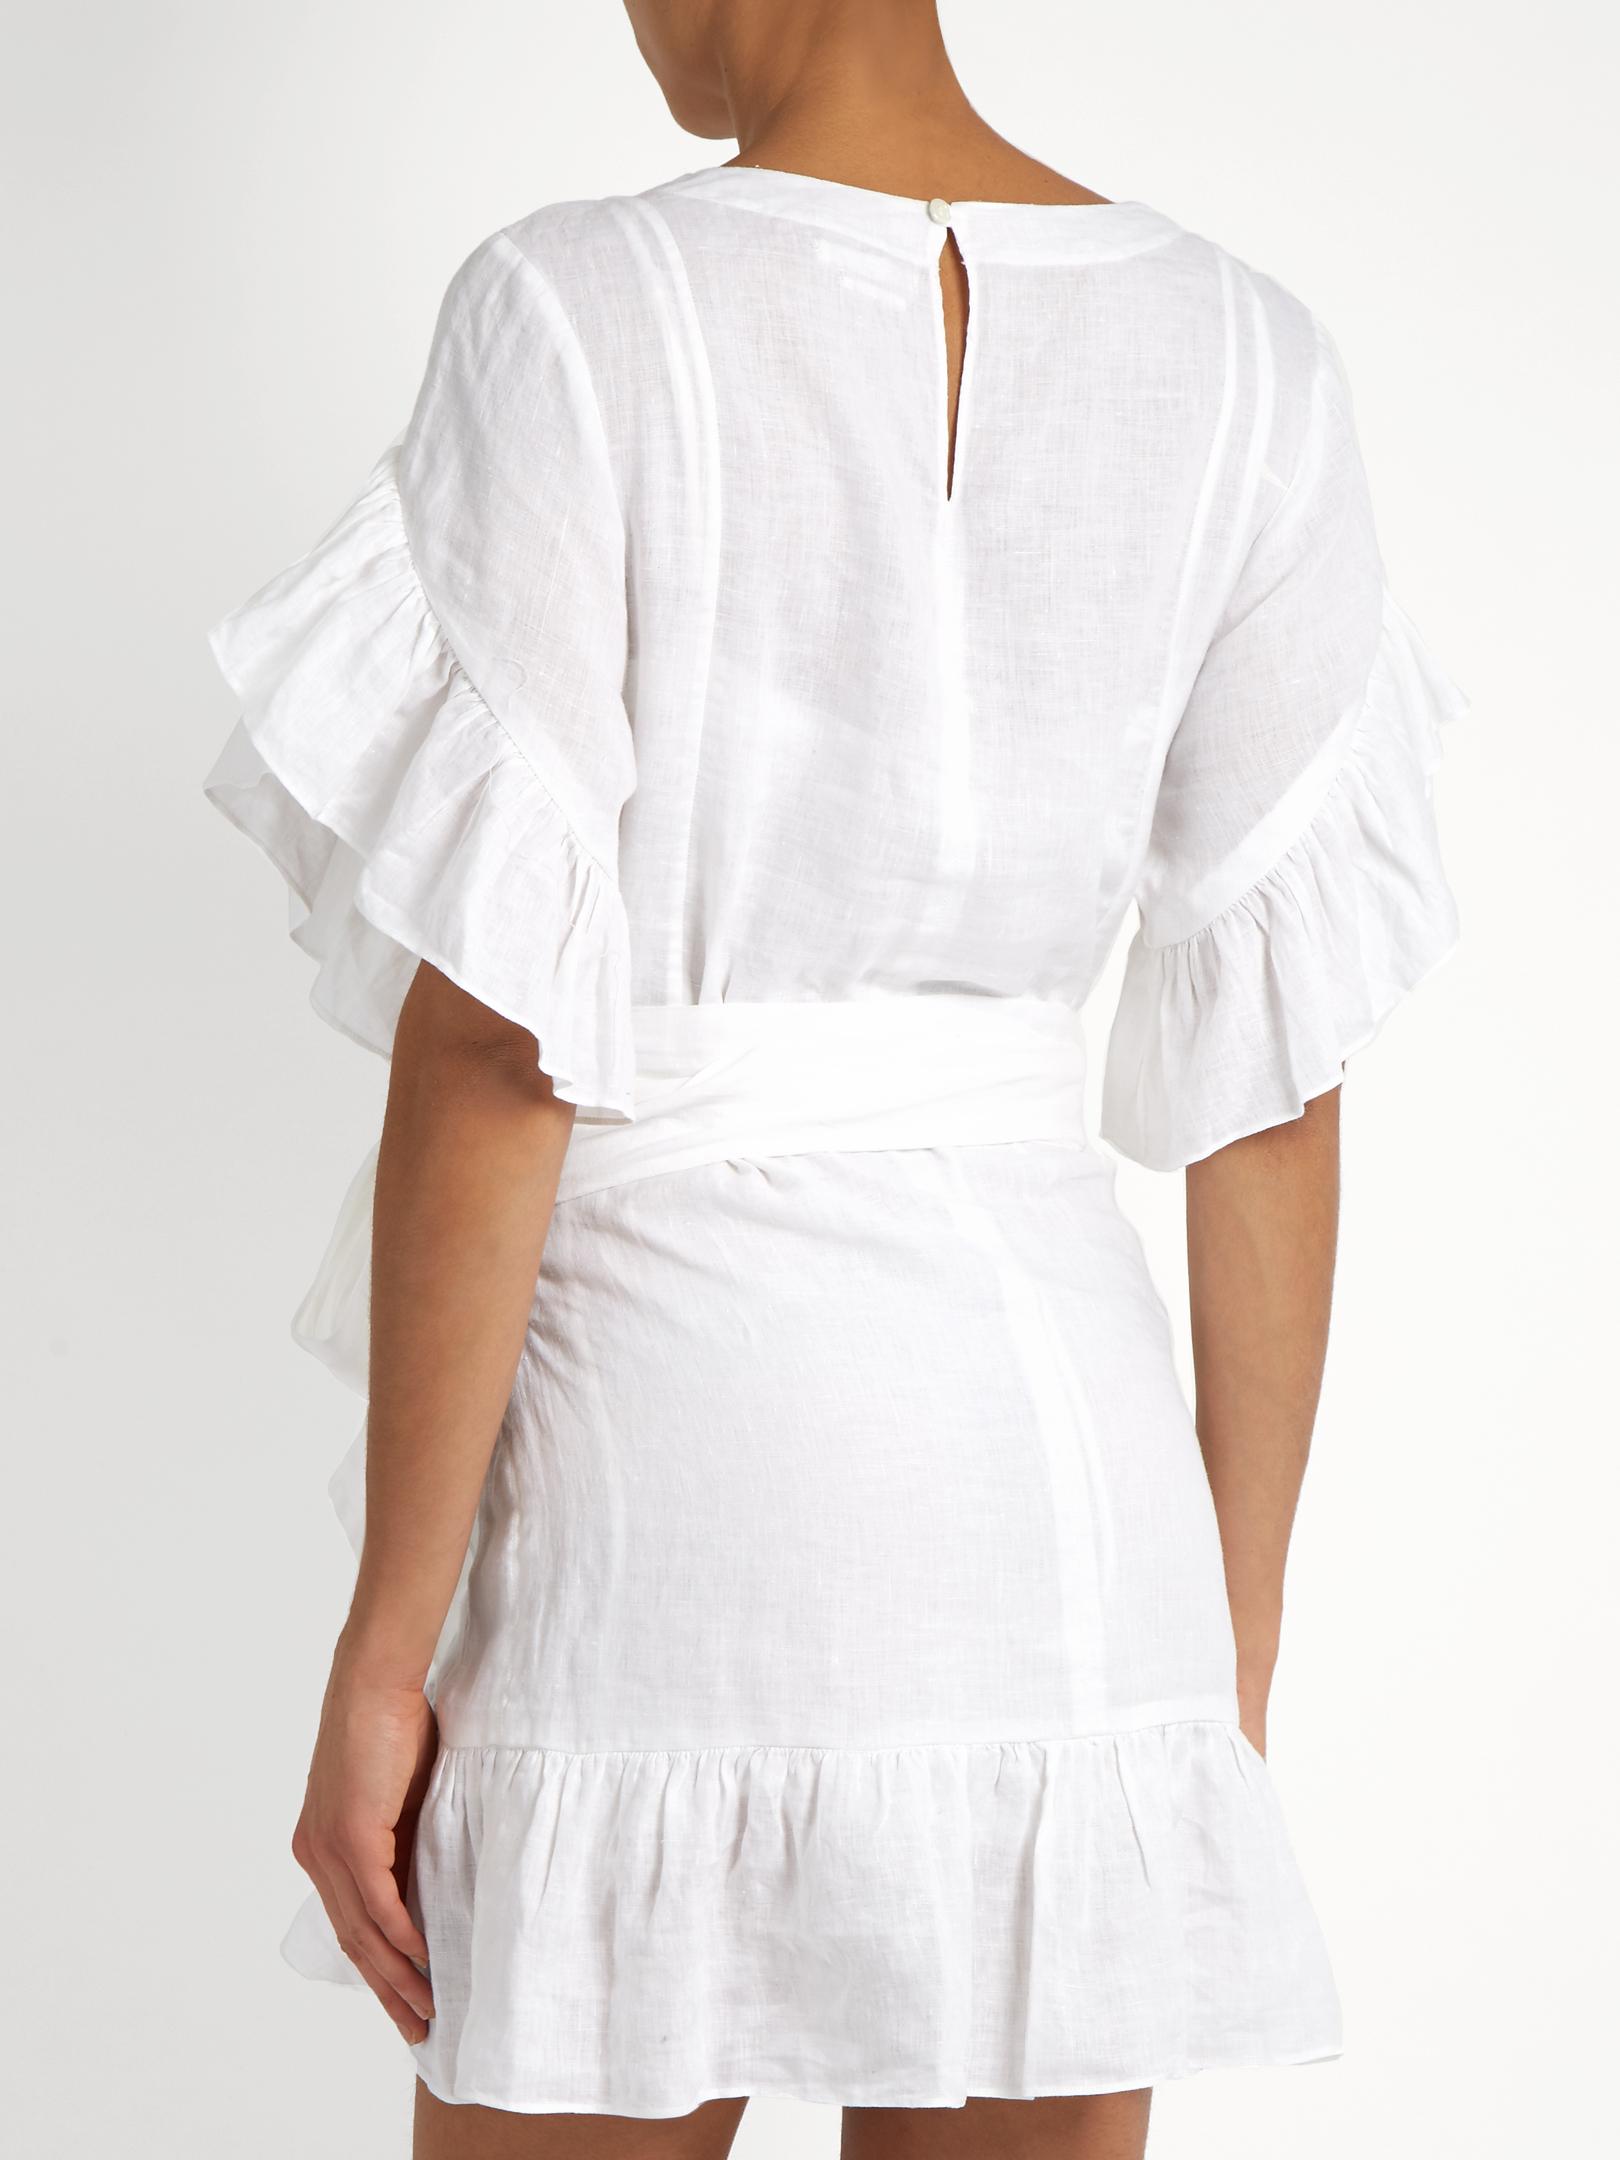 Buy > isabel marant delicia dress > in stock